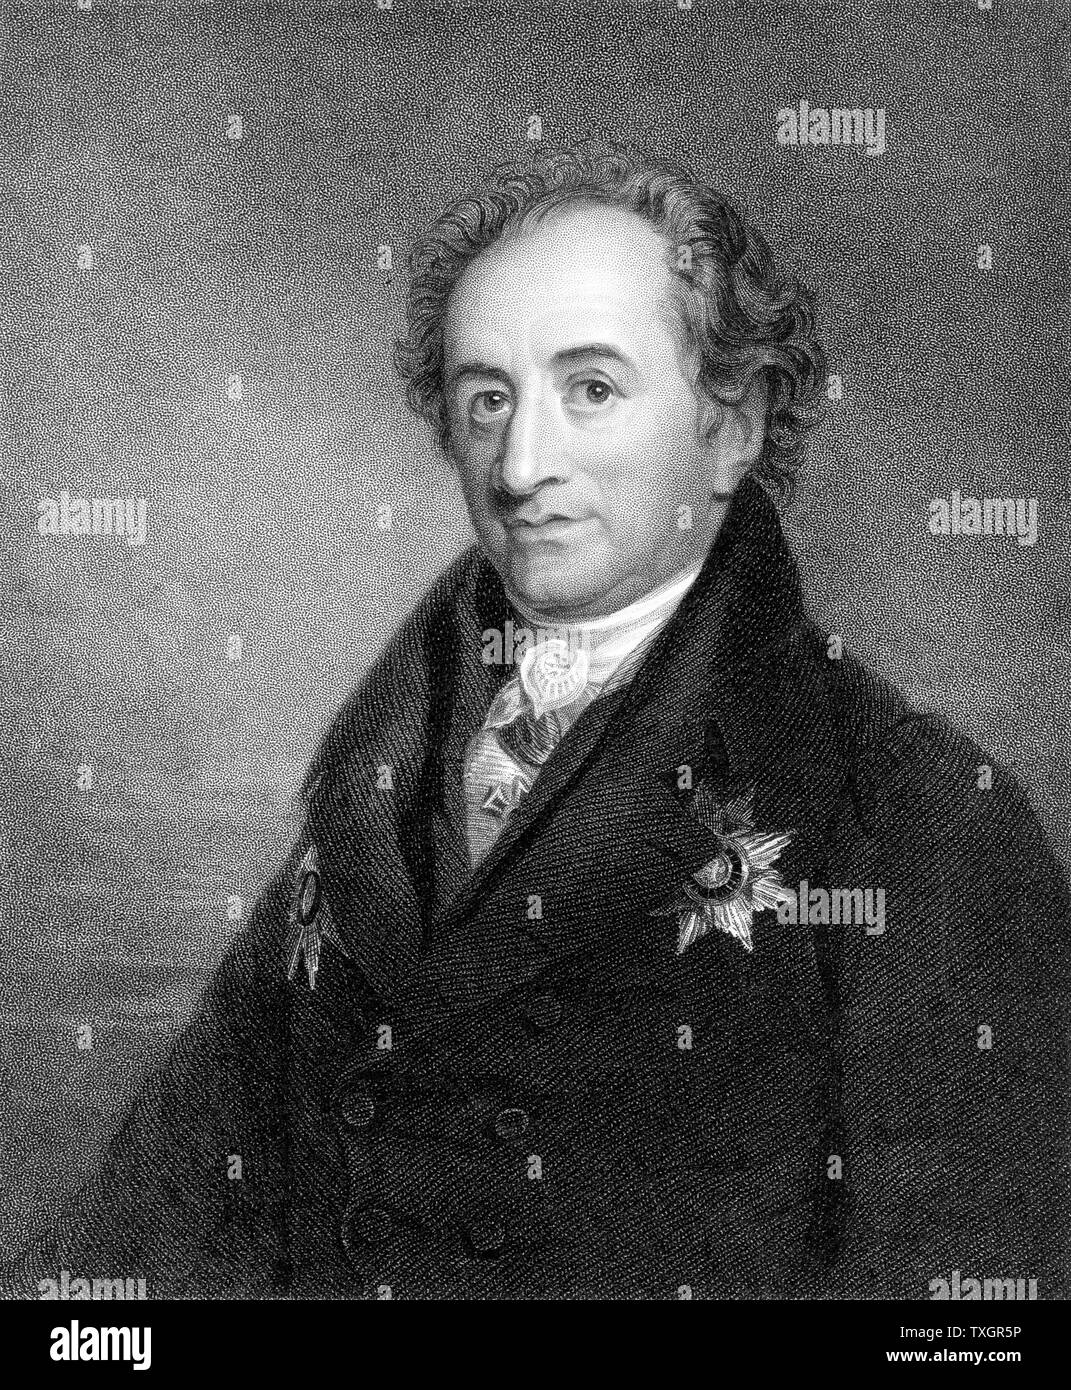 Johann Wolfgang von Goethe (1749-1832), deutscher Dichter, Dramatiker und Wissenschaftler Stahl 1832 Gravur Stockfoto